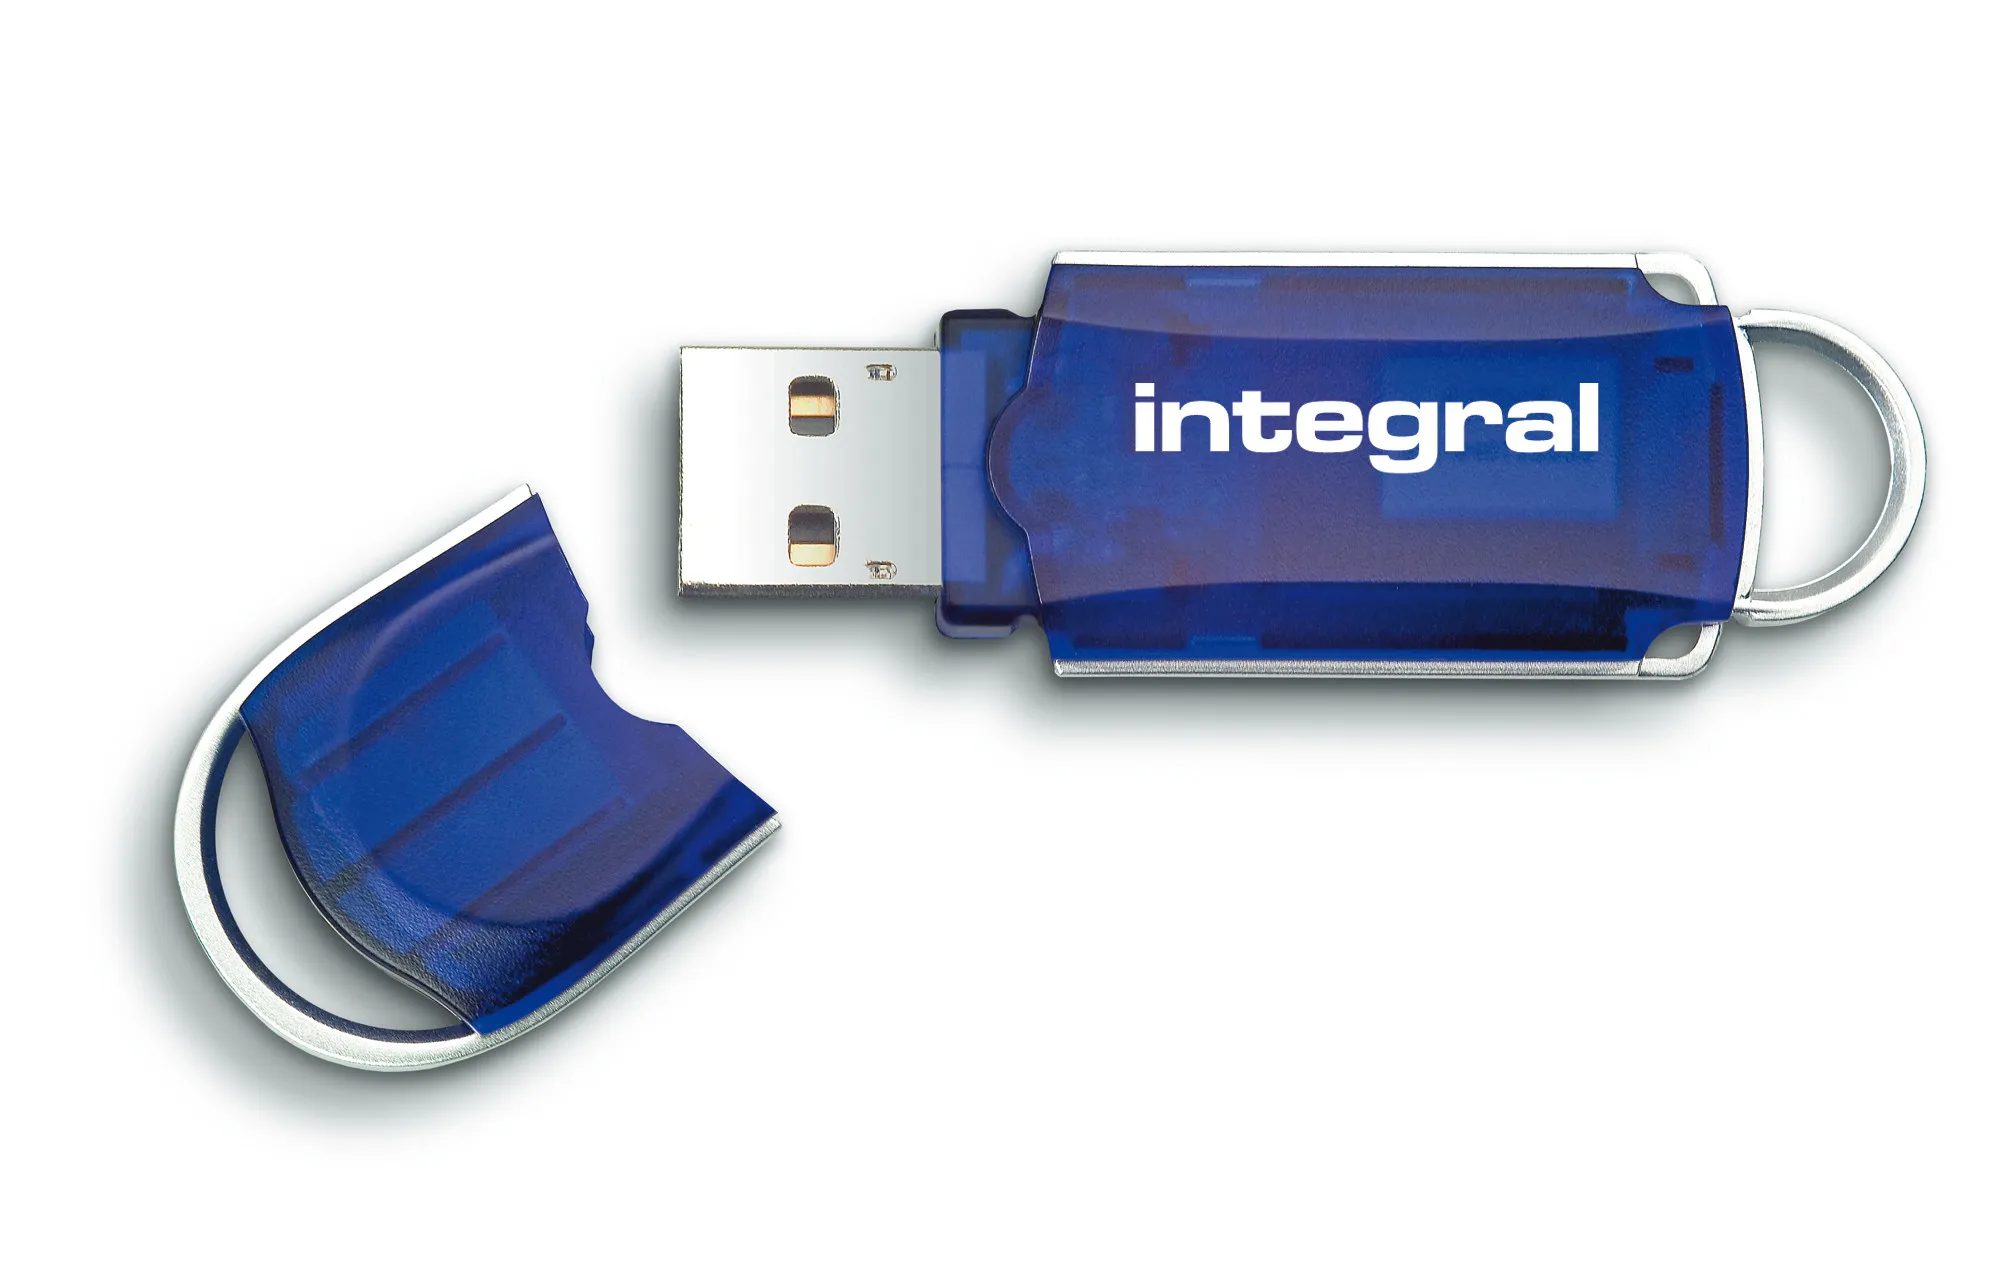 Vente Integral 8GB USB2.0 DRIVE COURIER BLUE INTEGRAL Integral au meilleur prix - visuel 2